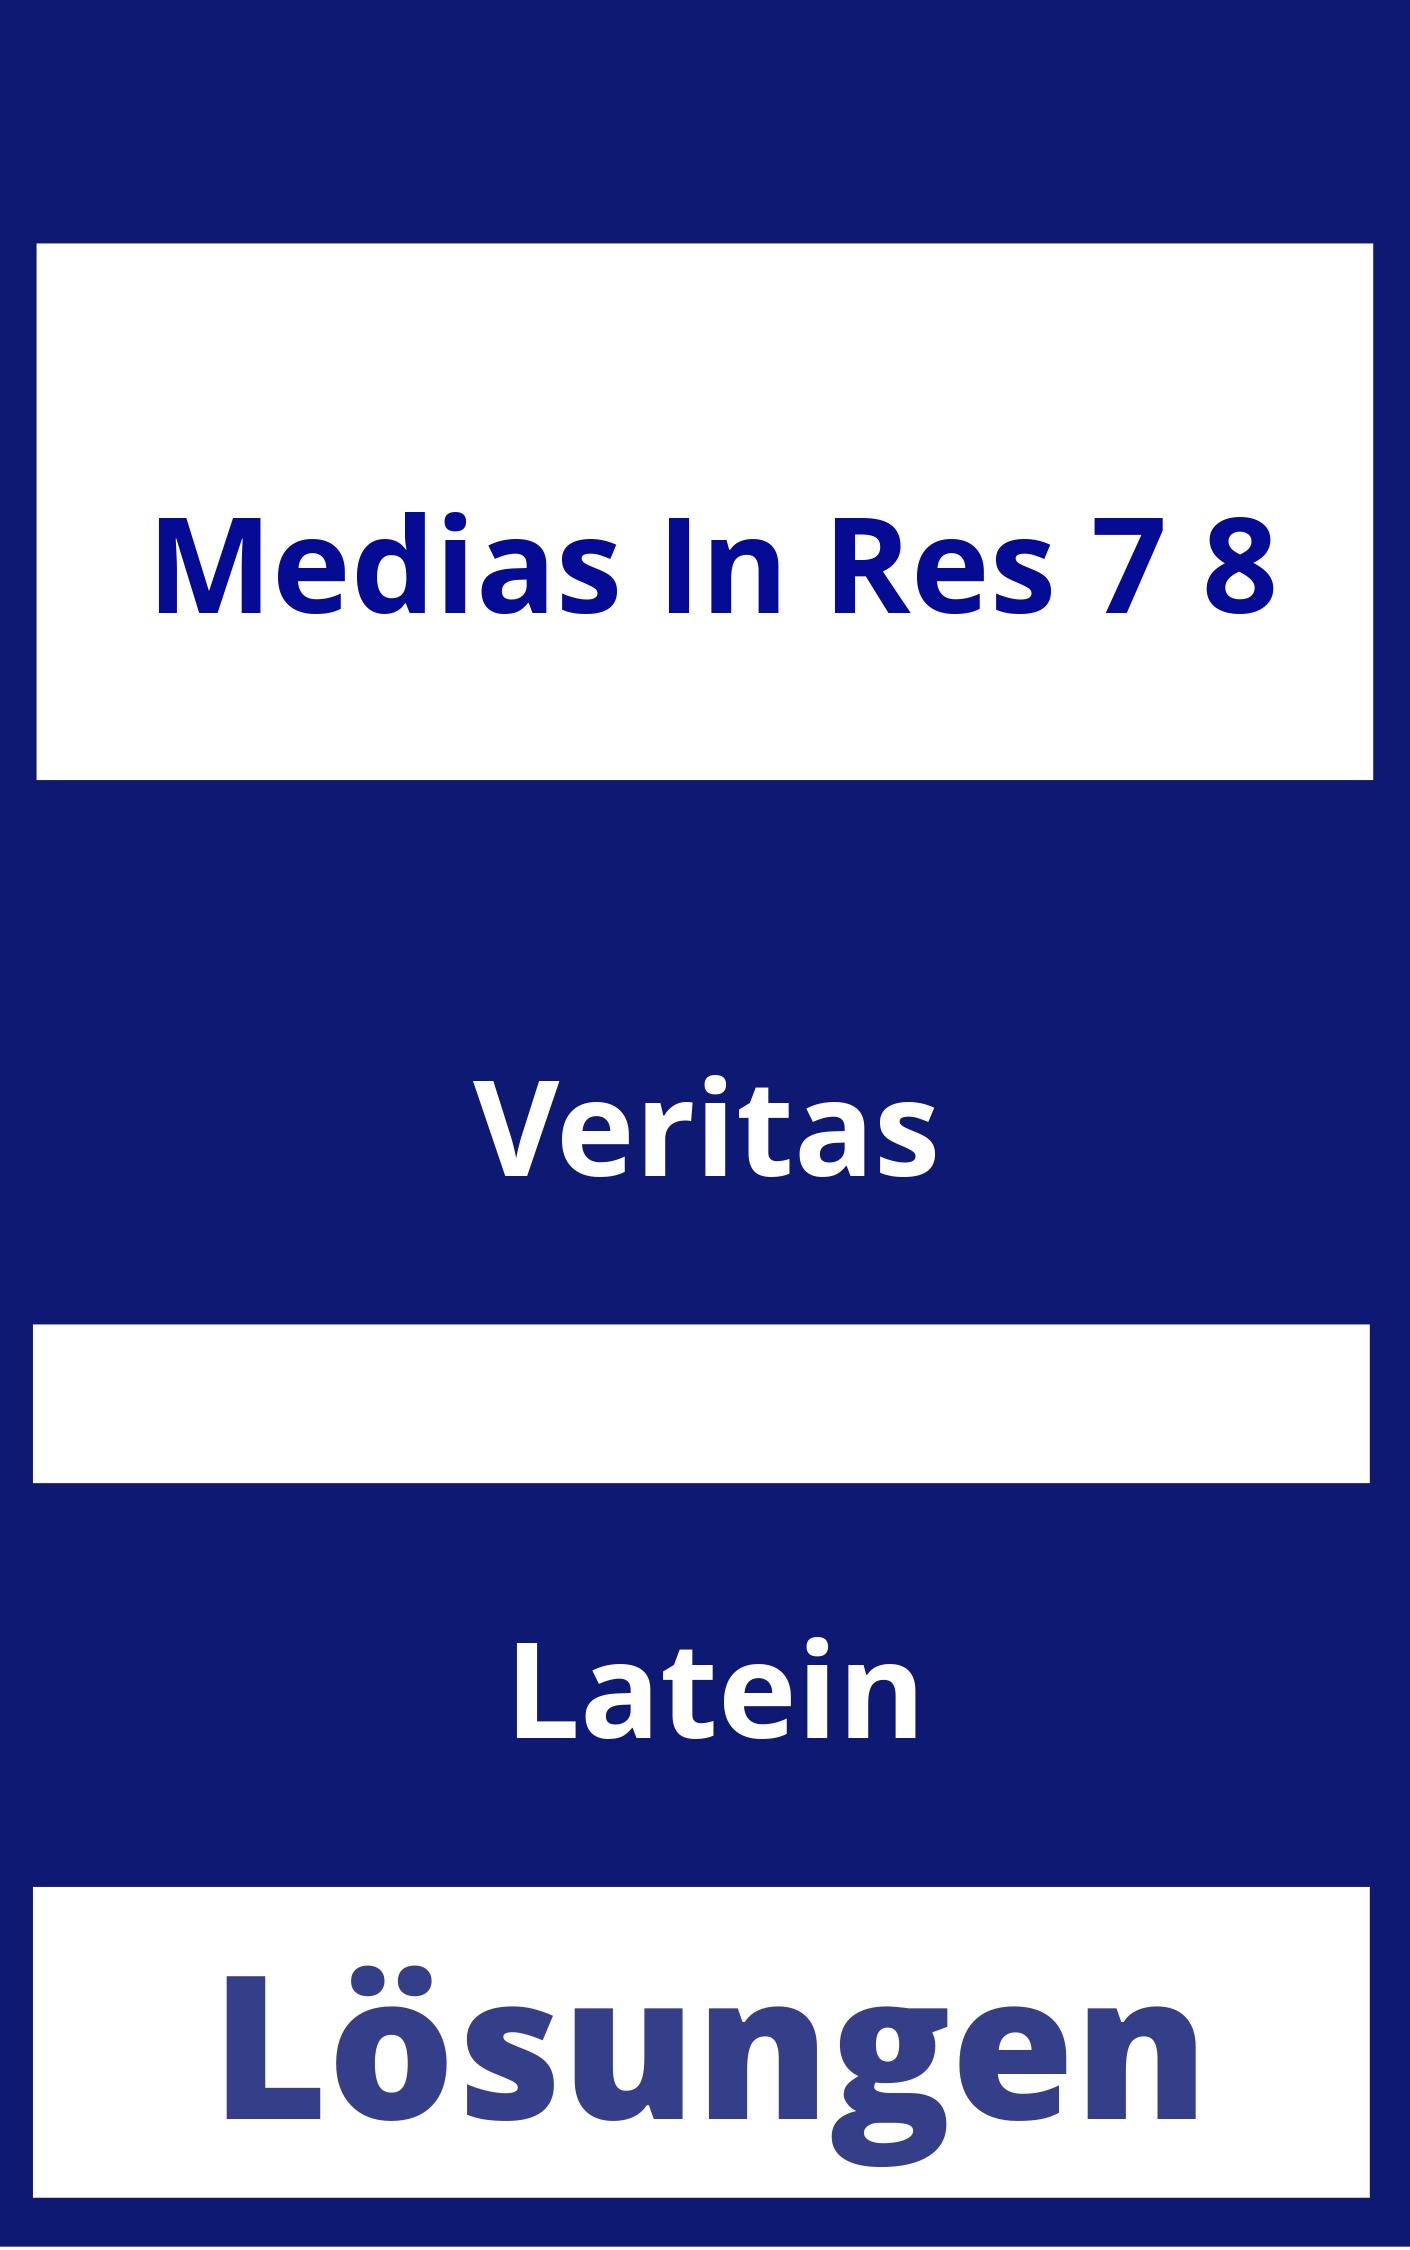 Medias in Res 7/8